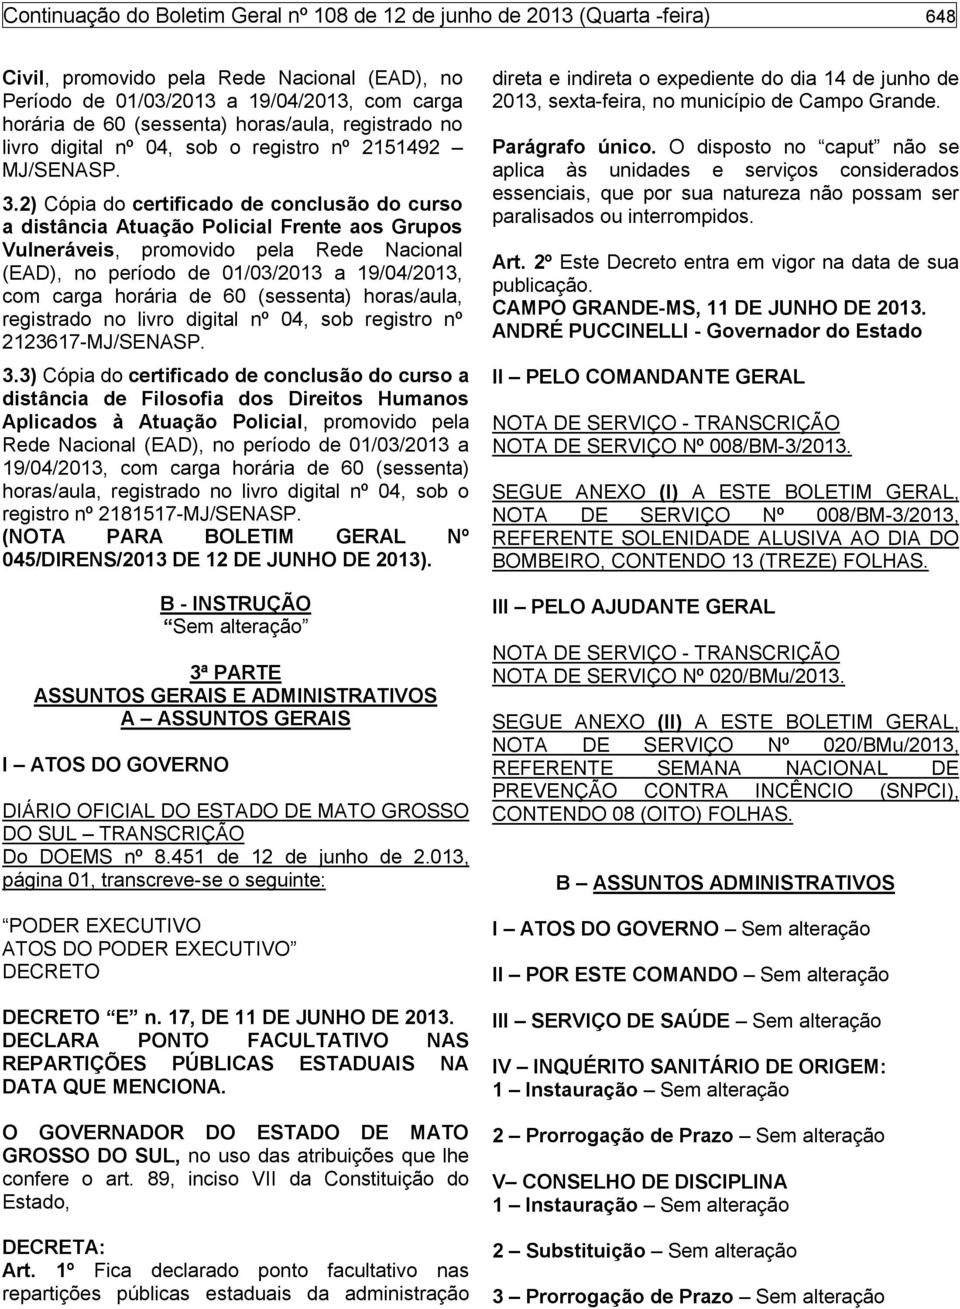 2) Cópia do certificado de conclusão do curso a distância Atuação Policial Frente aos Grupos Vulneráveis, promovido pela Rede Nacional (EAD), no período de 01/03/2013 a 19/04/2013, com carga horária